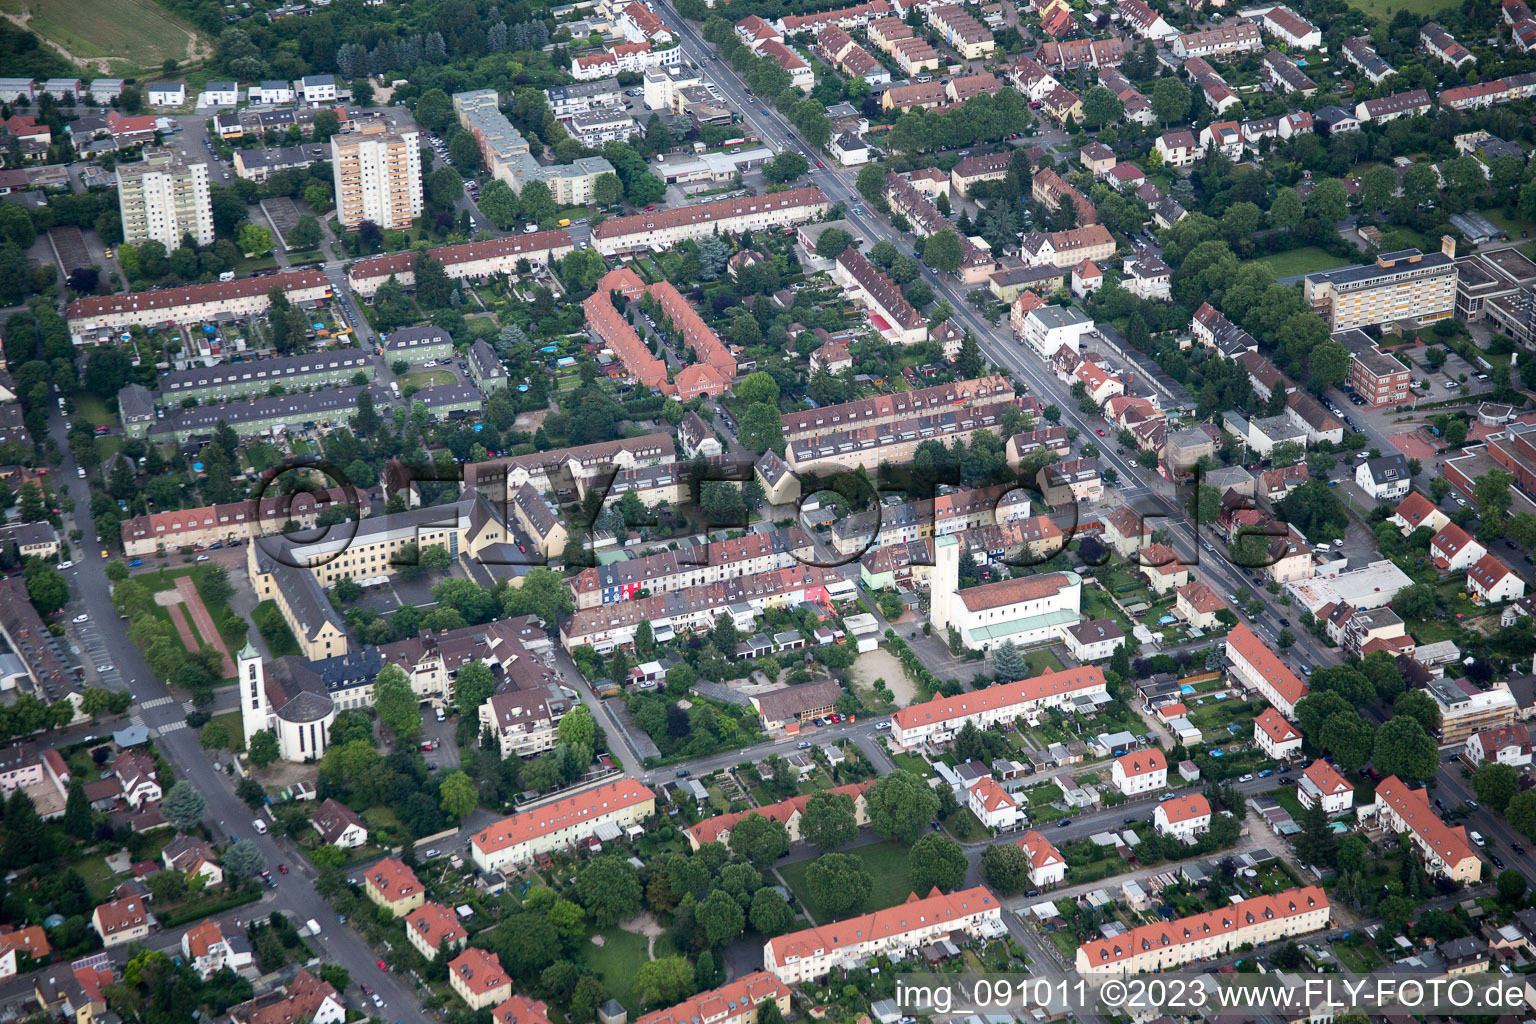 Luftbild von Ortsteil Gartenstadt in Ludwigshafen am Rhein im Bundesland Rheinland-Pfalz, Deutschland